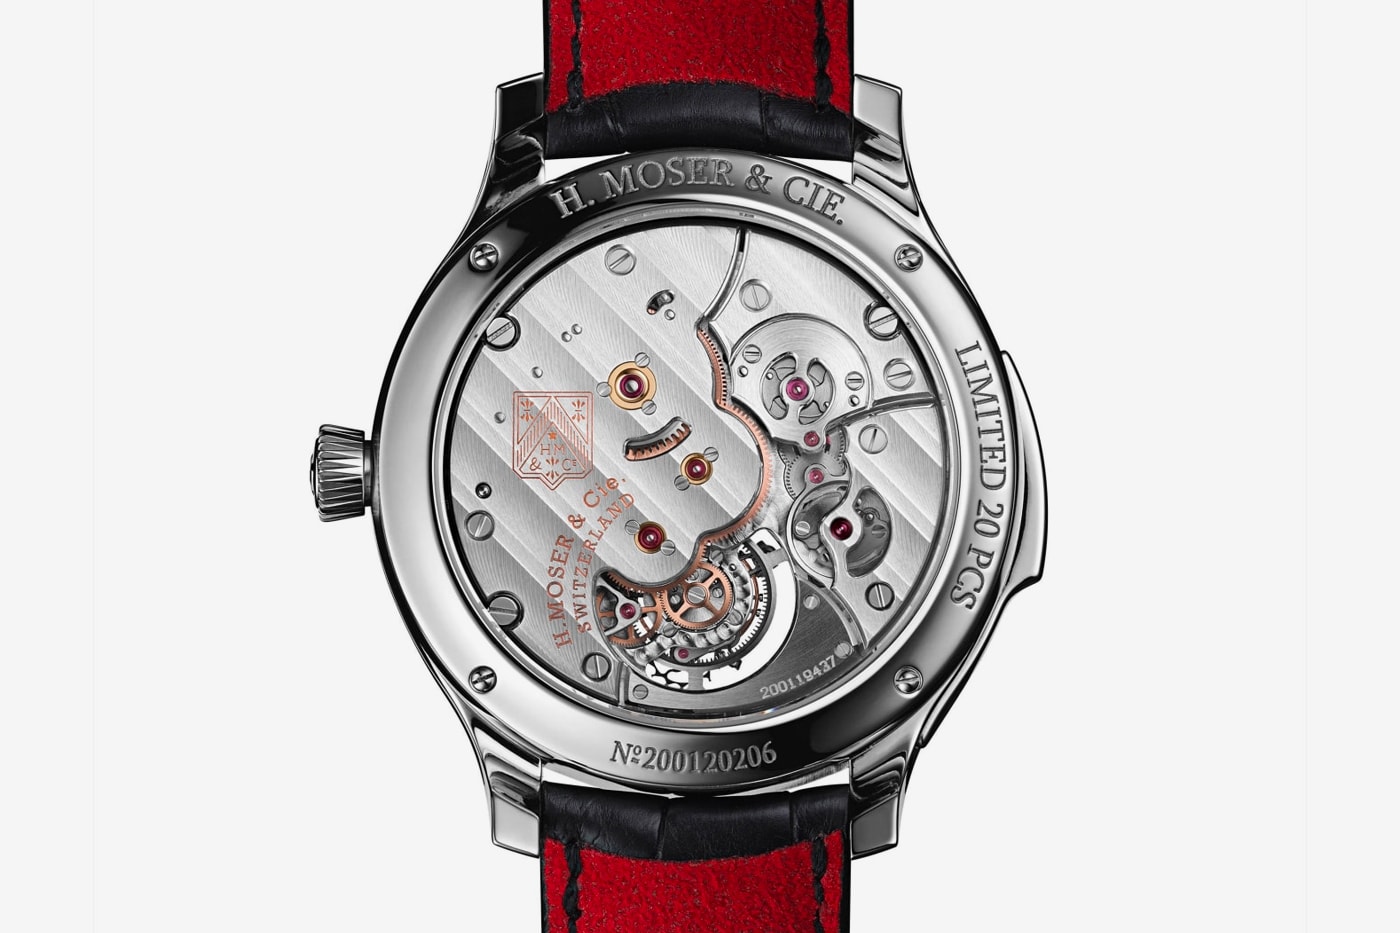 Endeavour Concept Minute Repeater Tourbillon Часы H. Moser & Cie, швейцарские немецкие механические часы собственного производства 